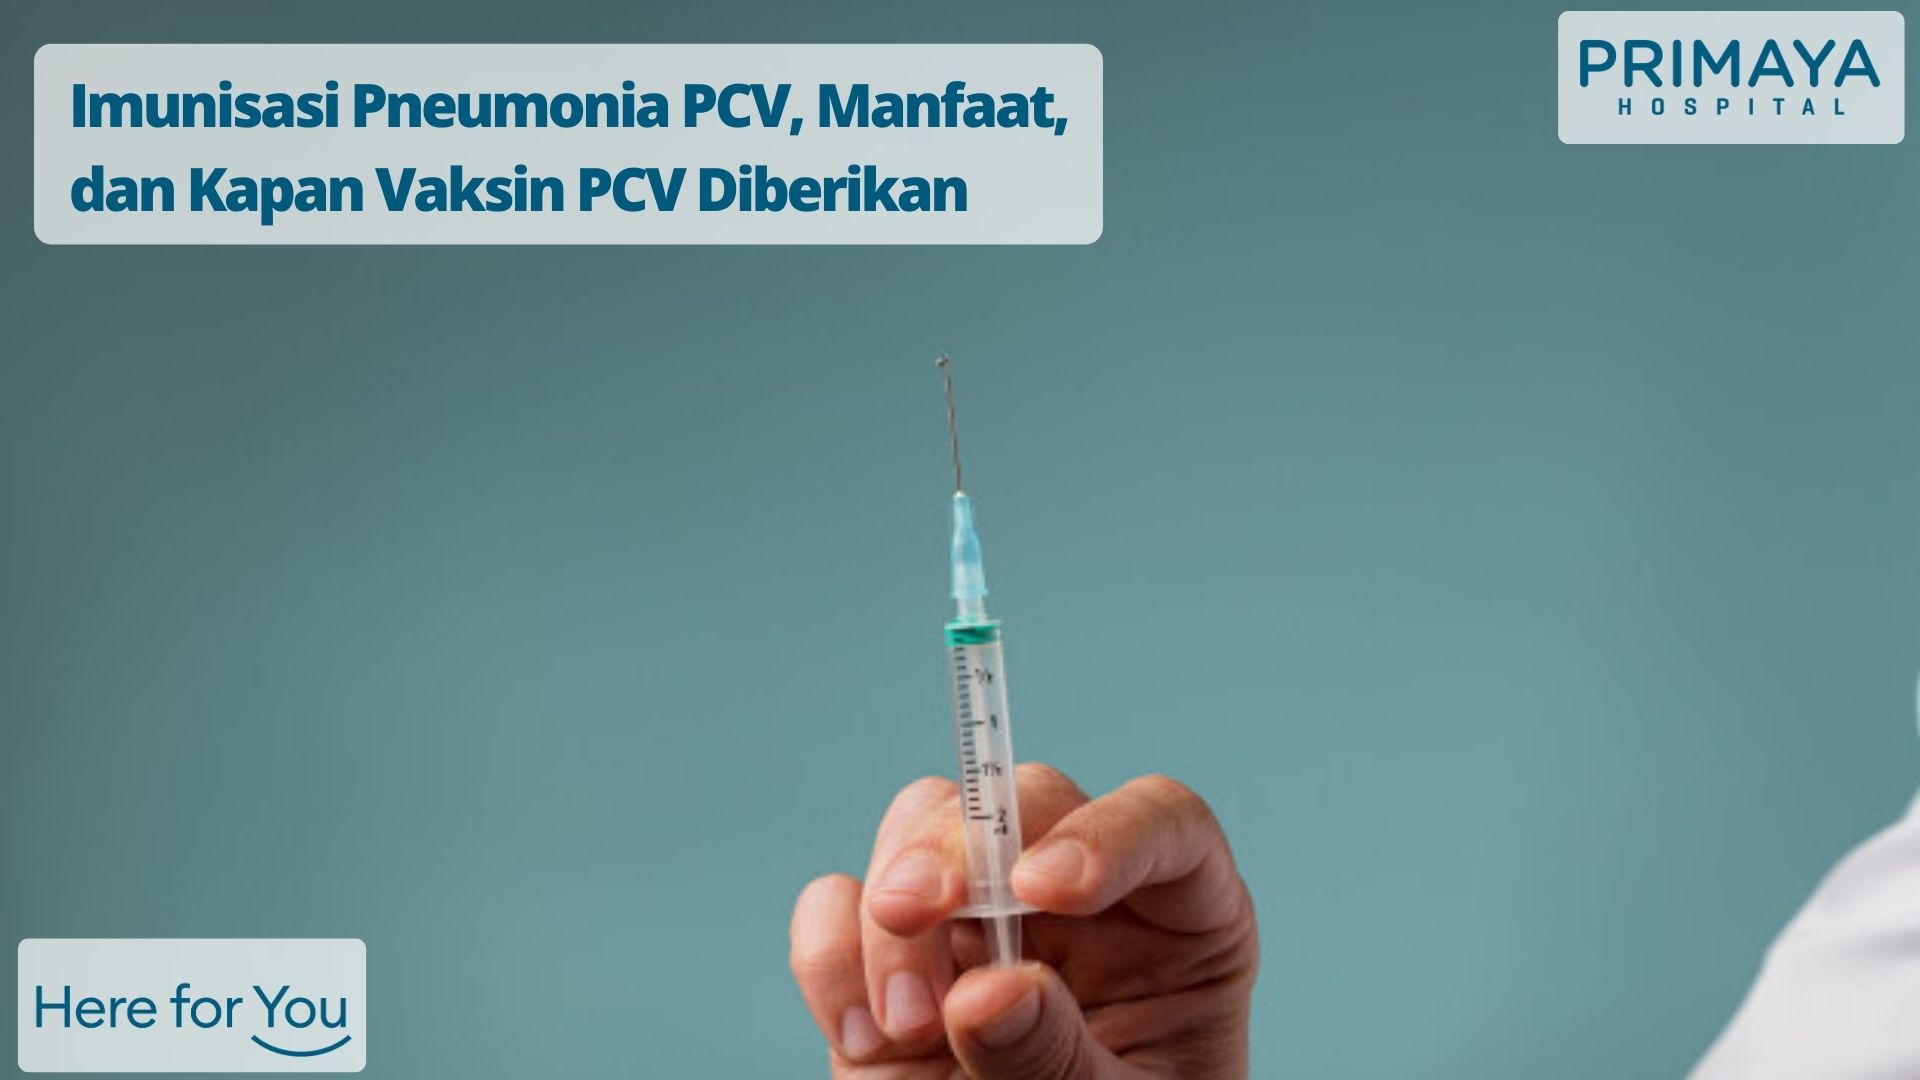 Imunisasi Pneumonia PCV, Manfaat, dan Kapan Vaksin PCV Diberikan